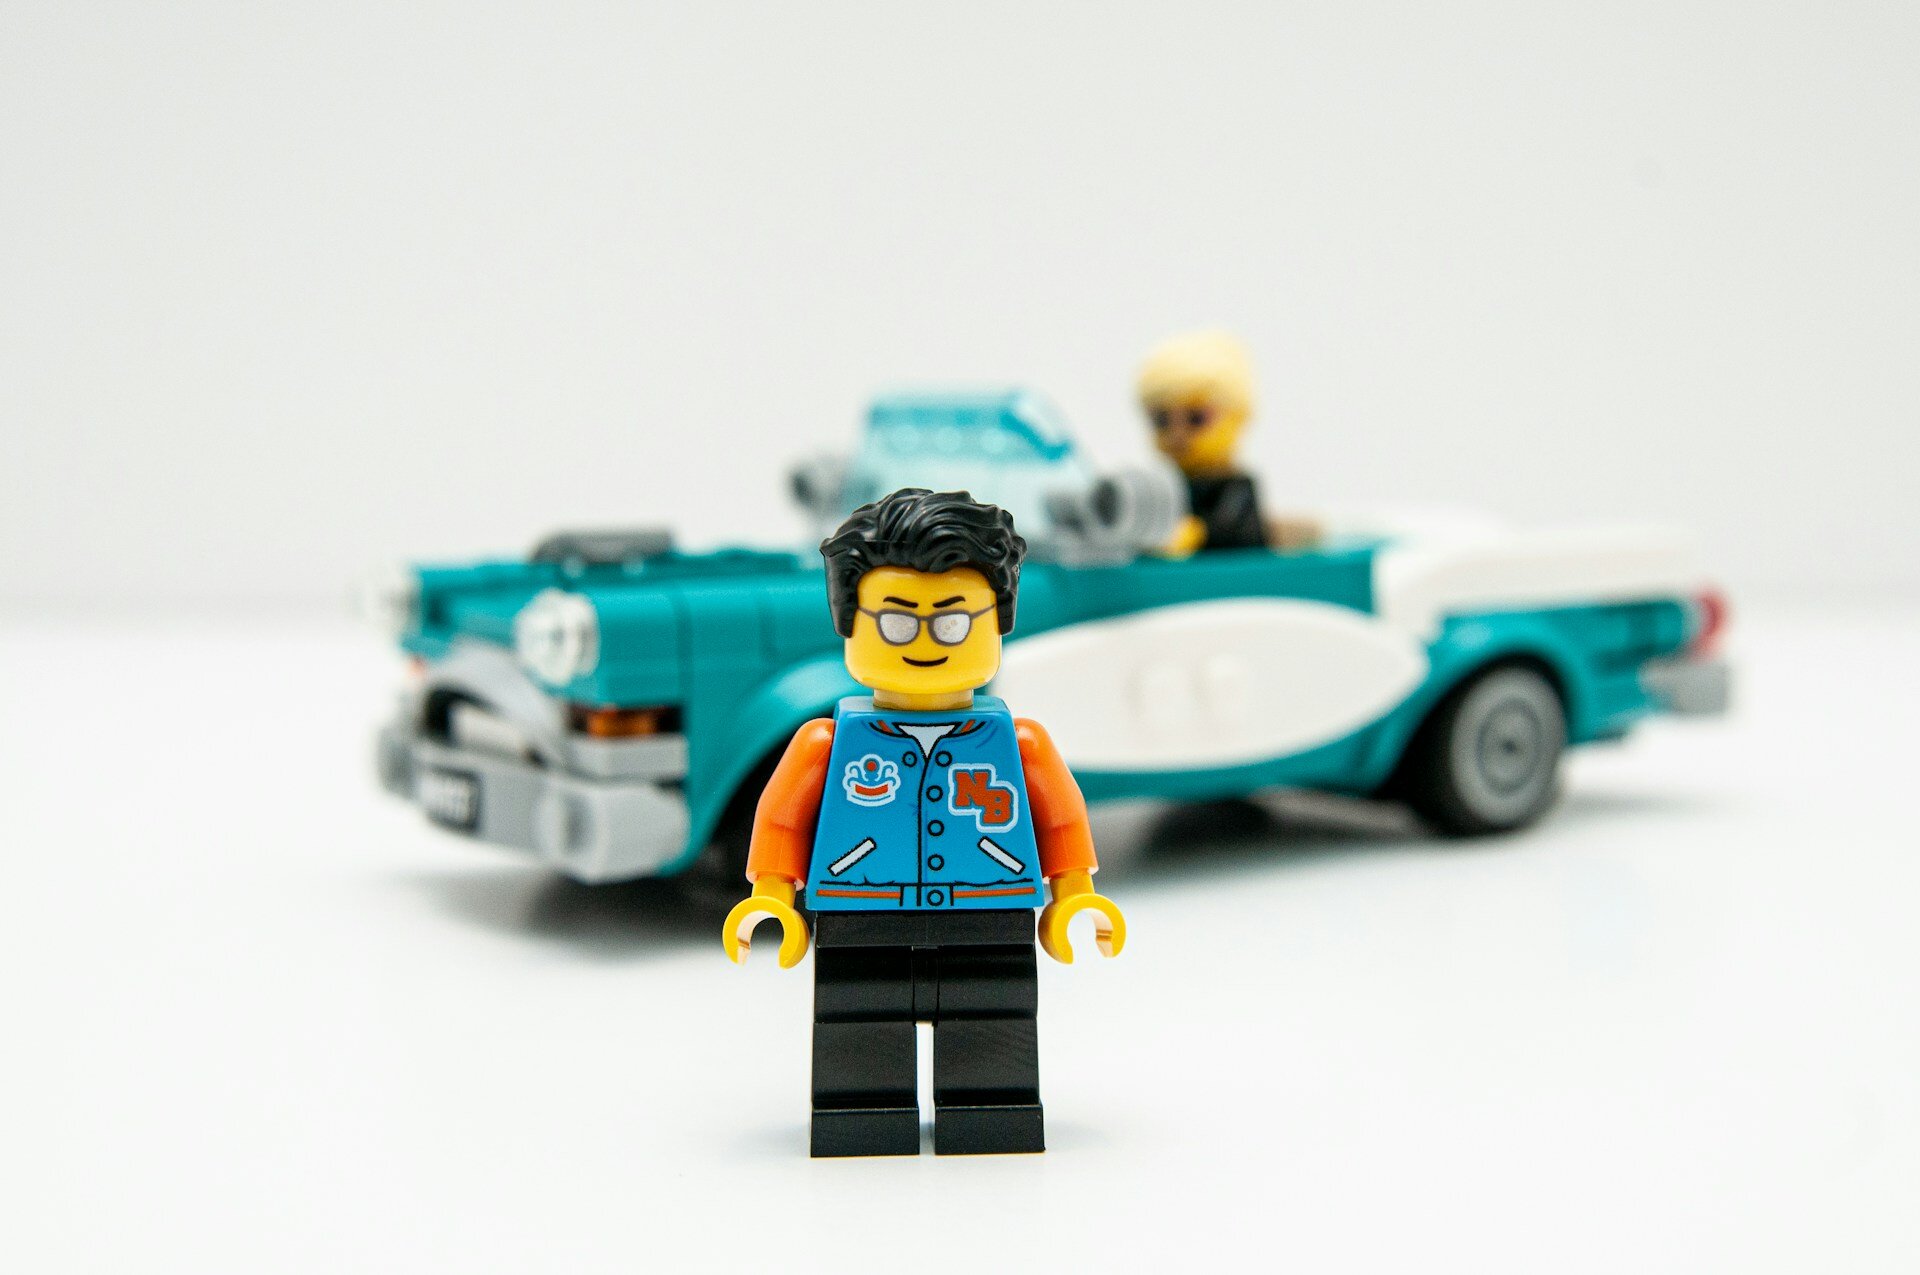 Auf dem Bild sieht man eine Legofigur mit einer Brille und blauen Jacke und im Hintergrund ein türkisfarbenes Legoauto mit einer Legofigur | © Matt Hudson/Unsplash